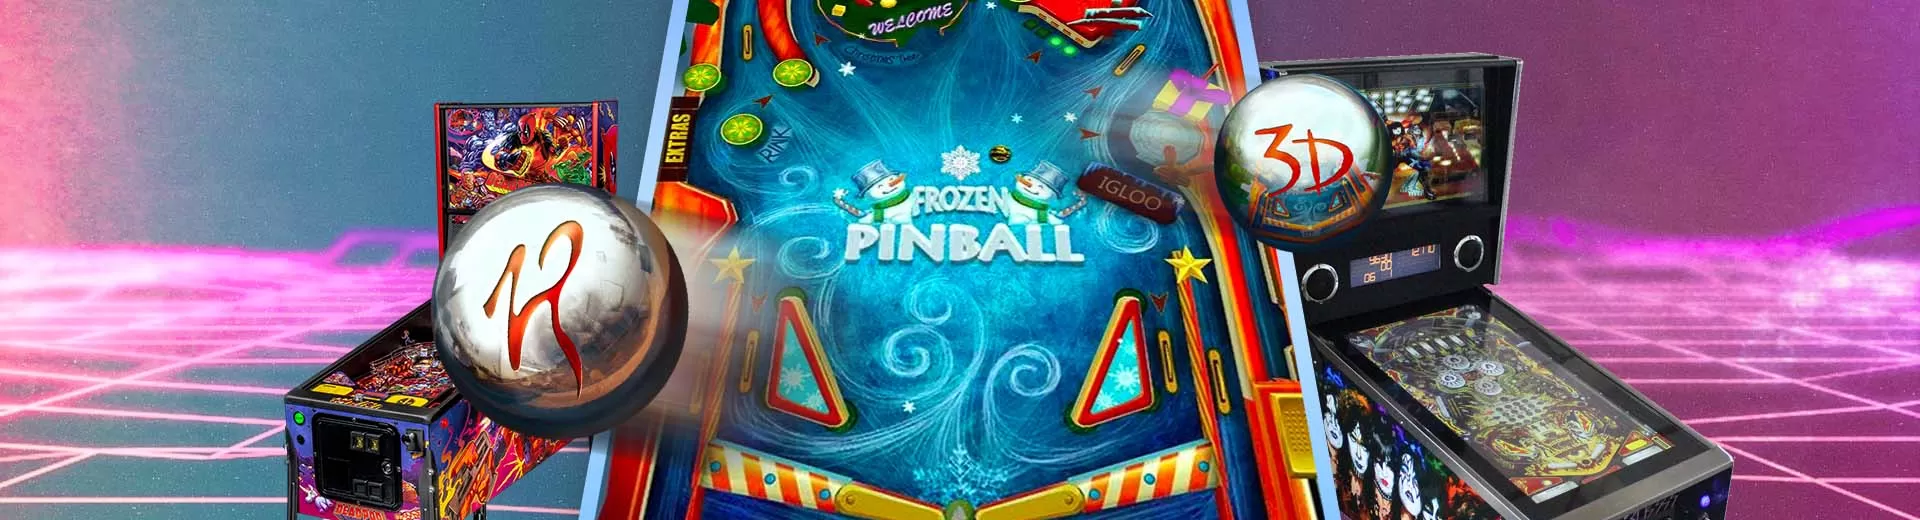 3d Pinball Emulator Pc